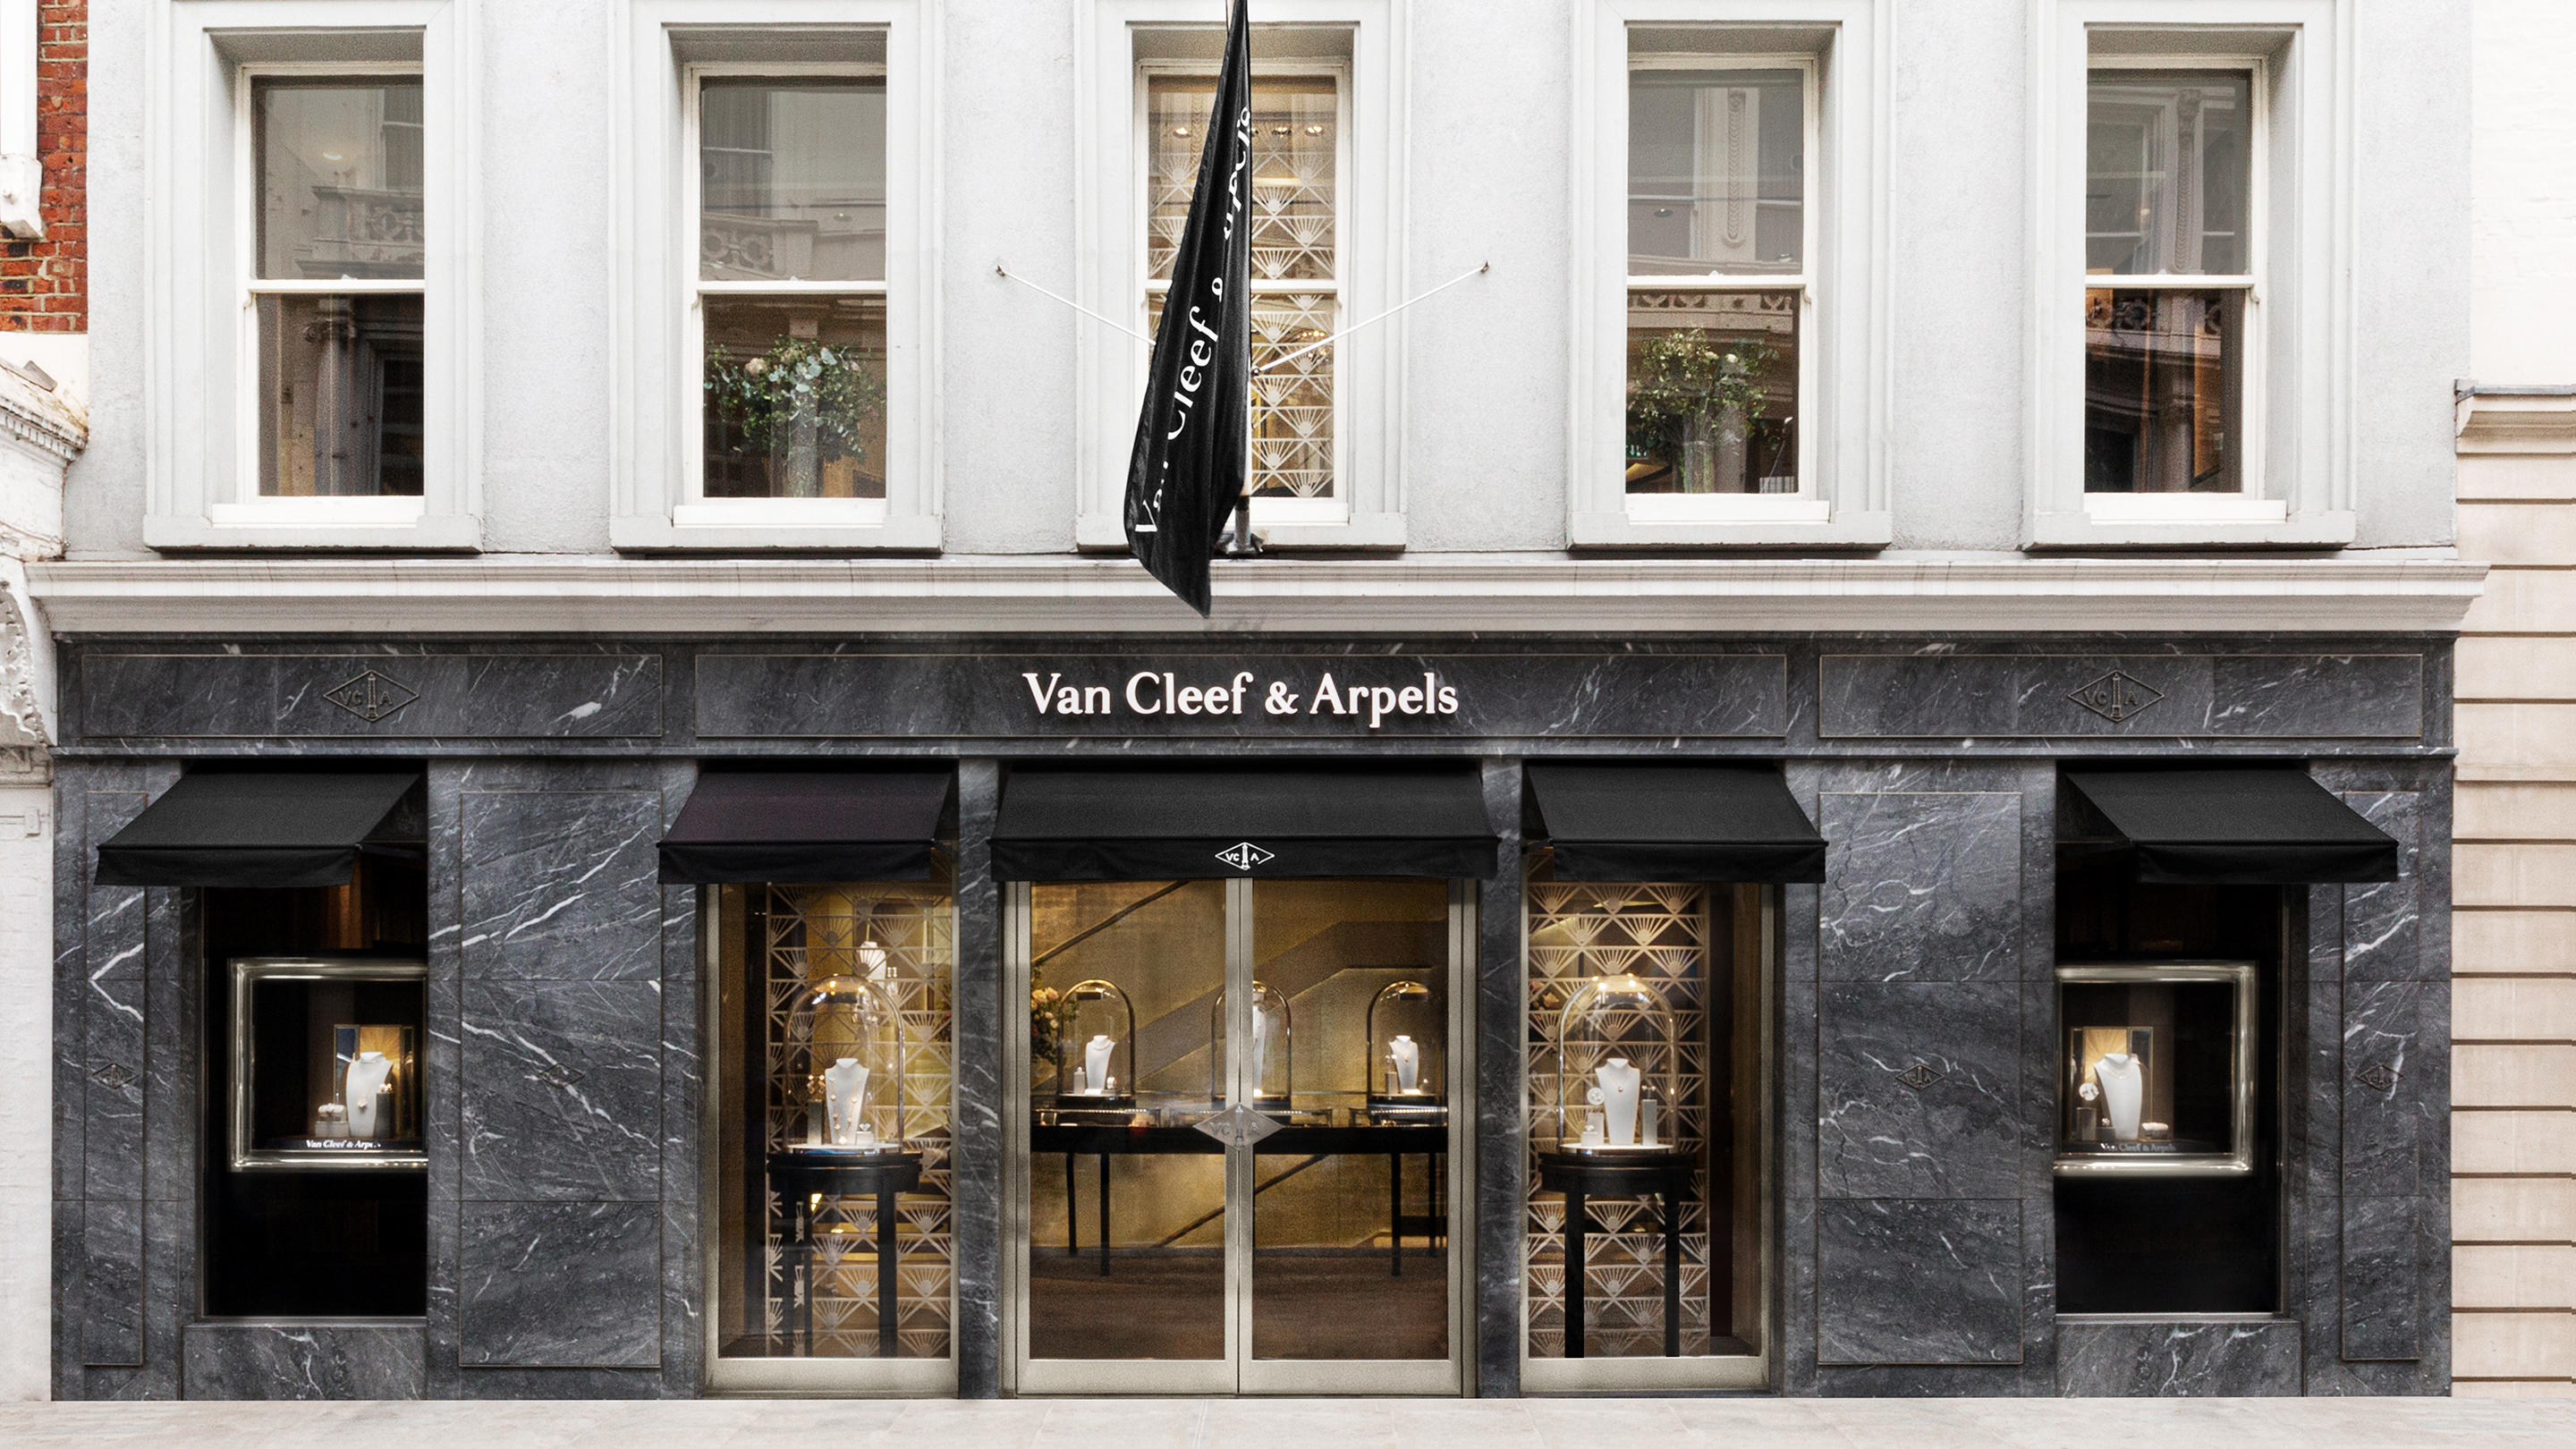 Van Cleef & Arpels (London - New Bond Street) Van Cleef & Arpels (London - New Bond Street) London 020 7493 0400